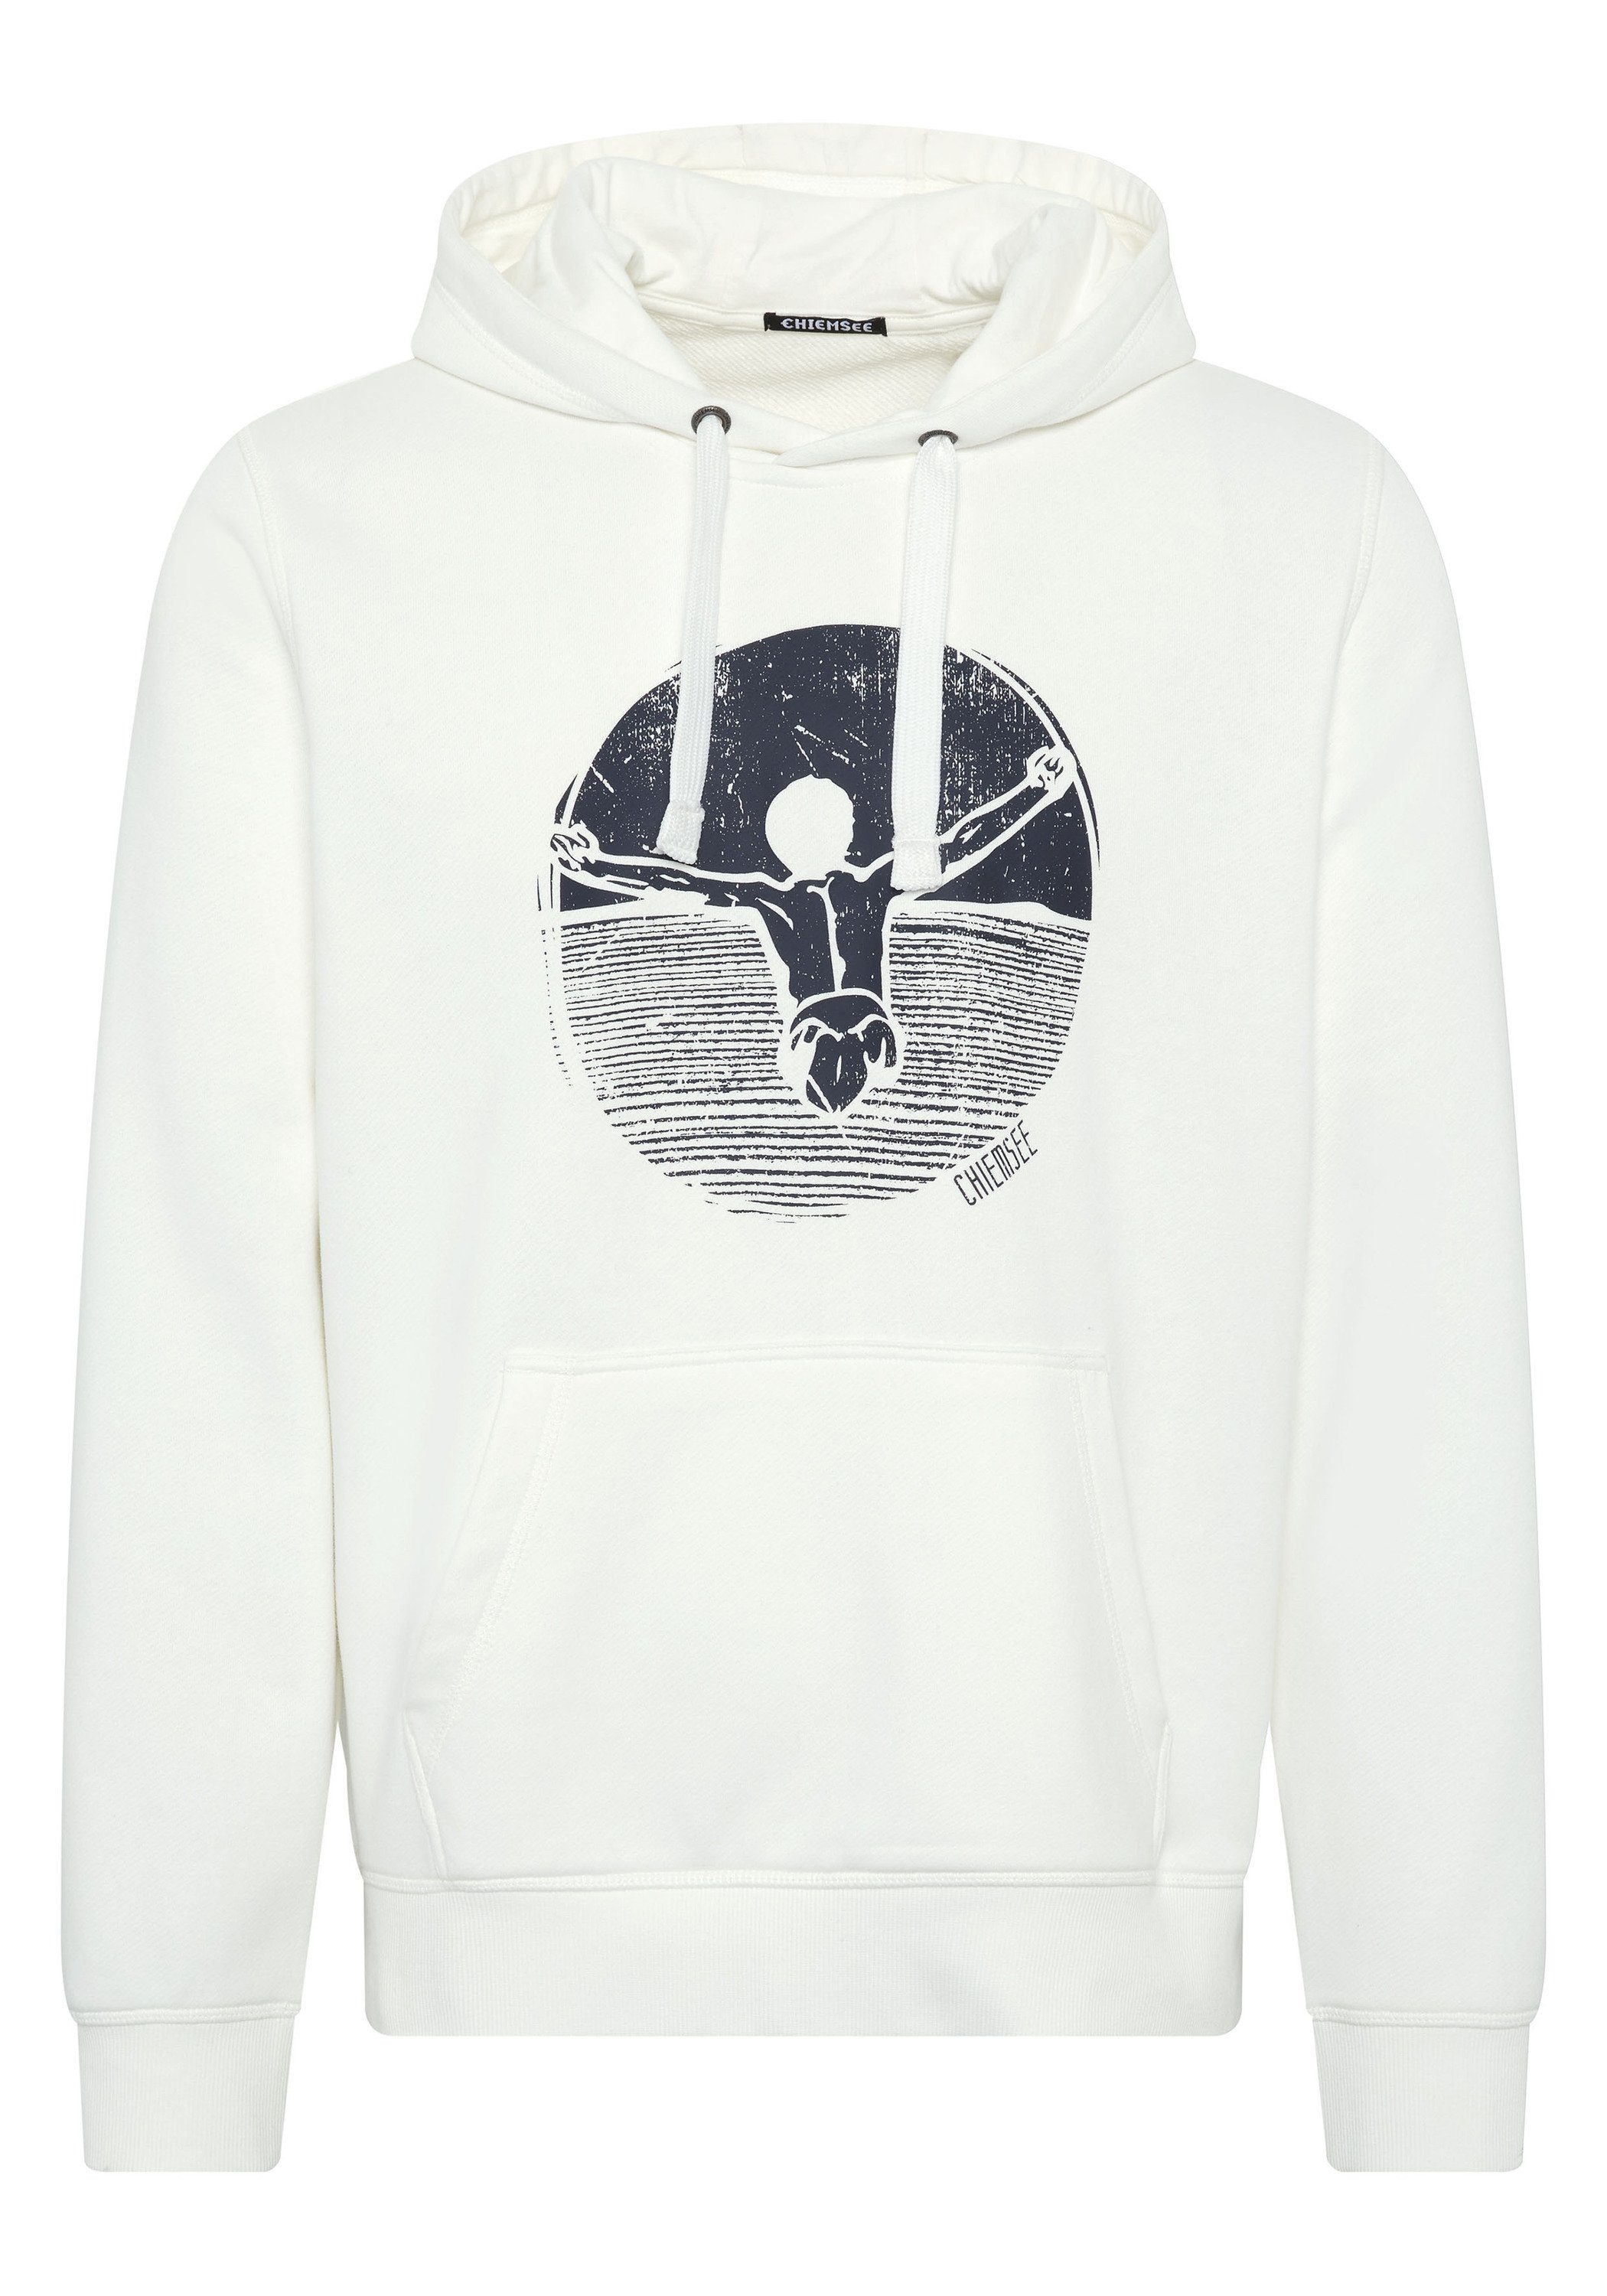 Chiemsee Kapuzensweatshirt Hoodie mit Jumper-Motiv White 1 11-4202 Star